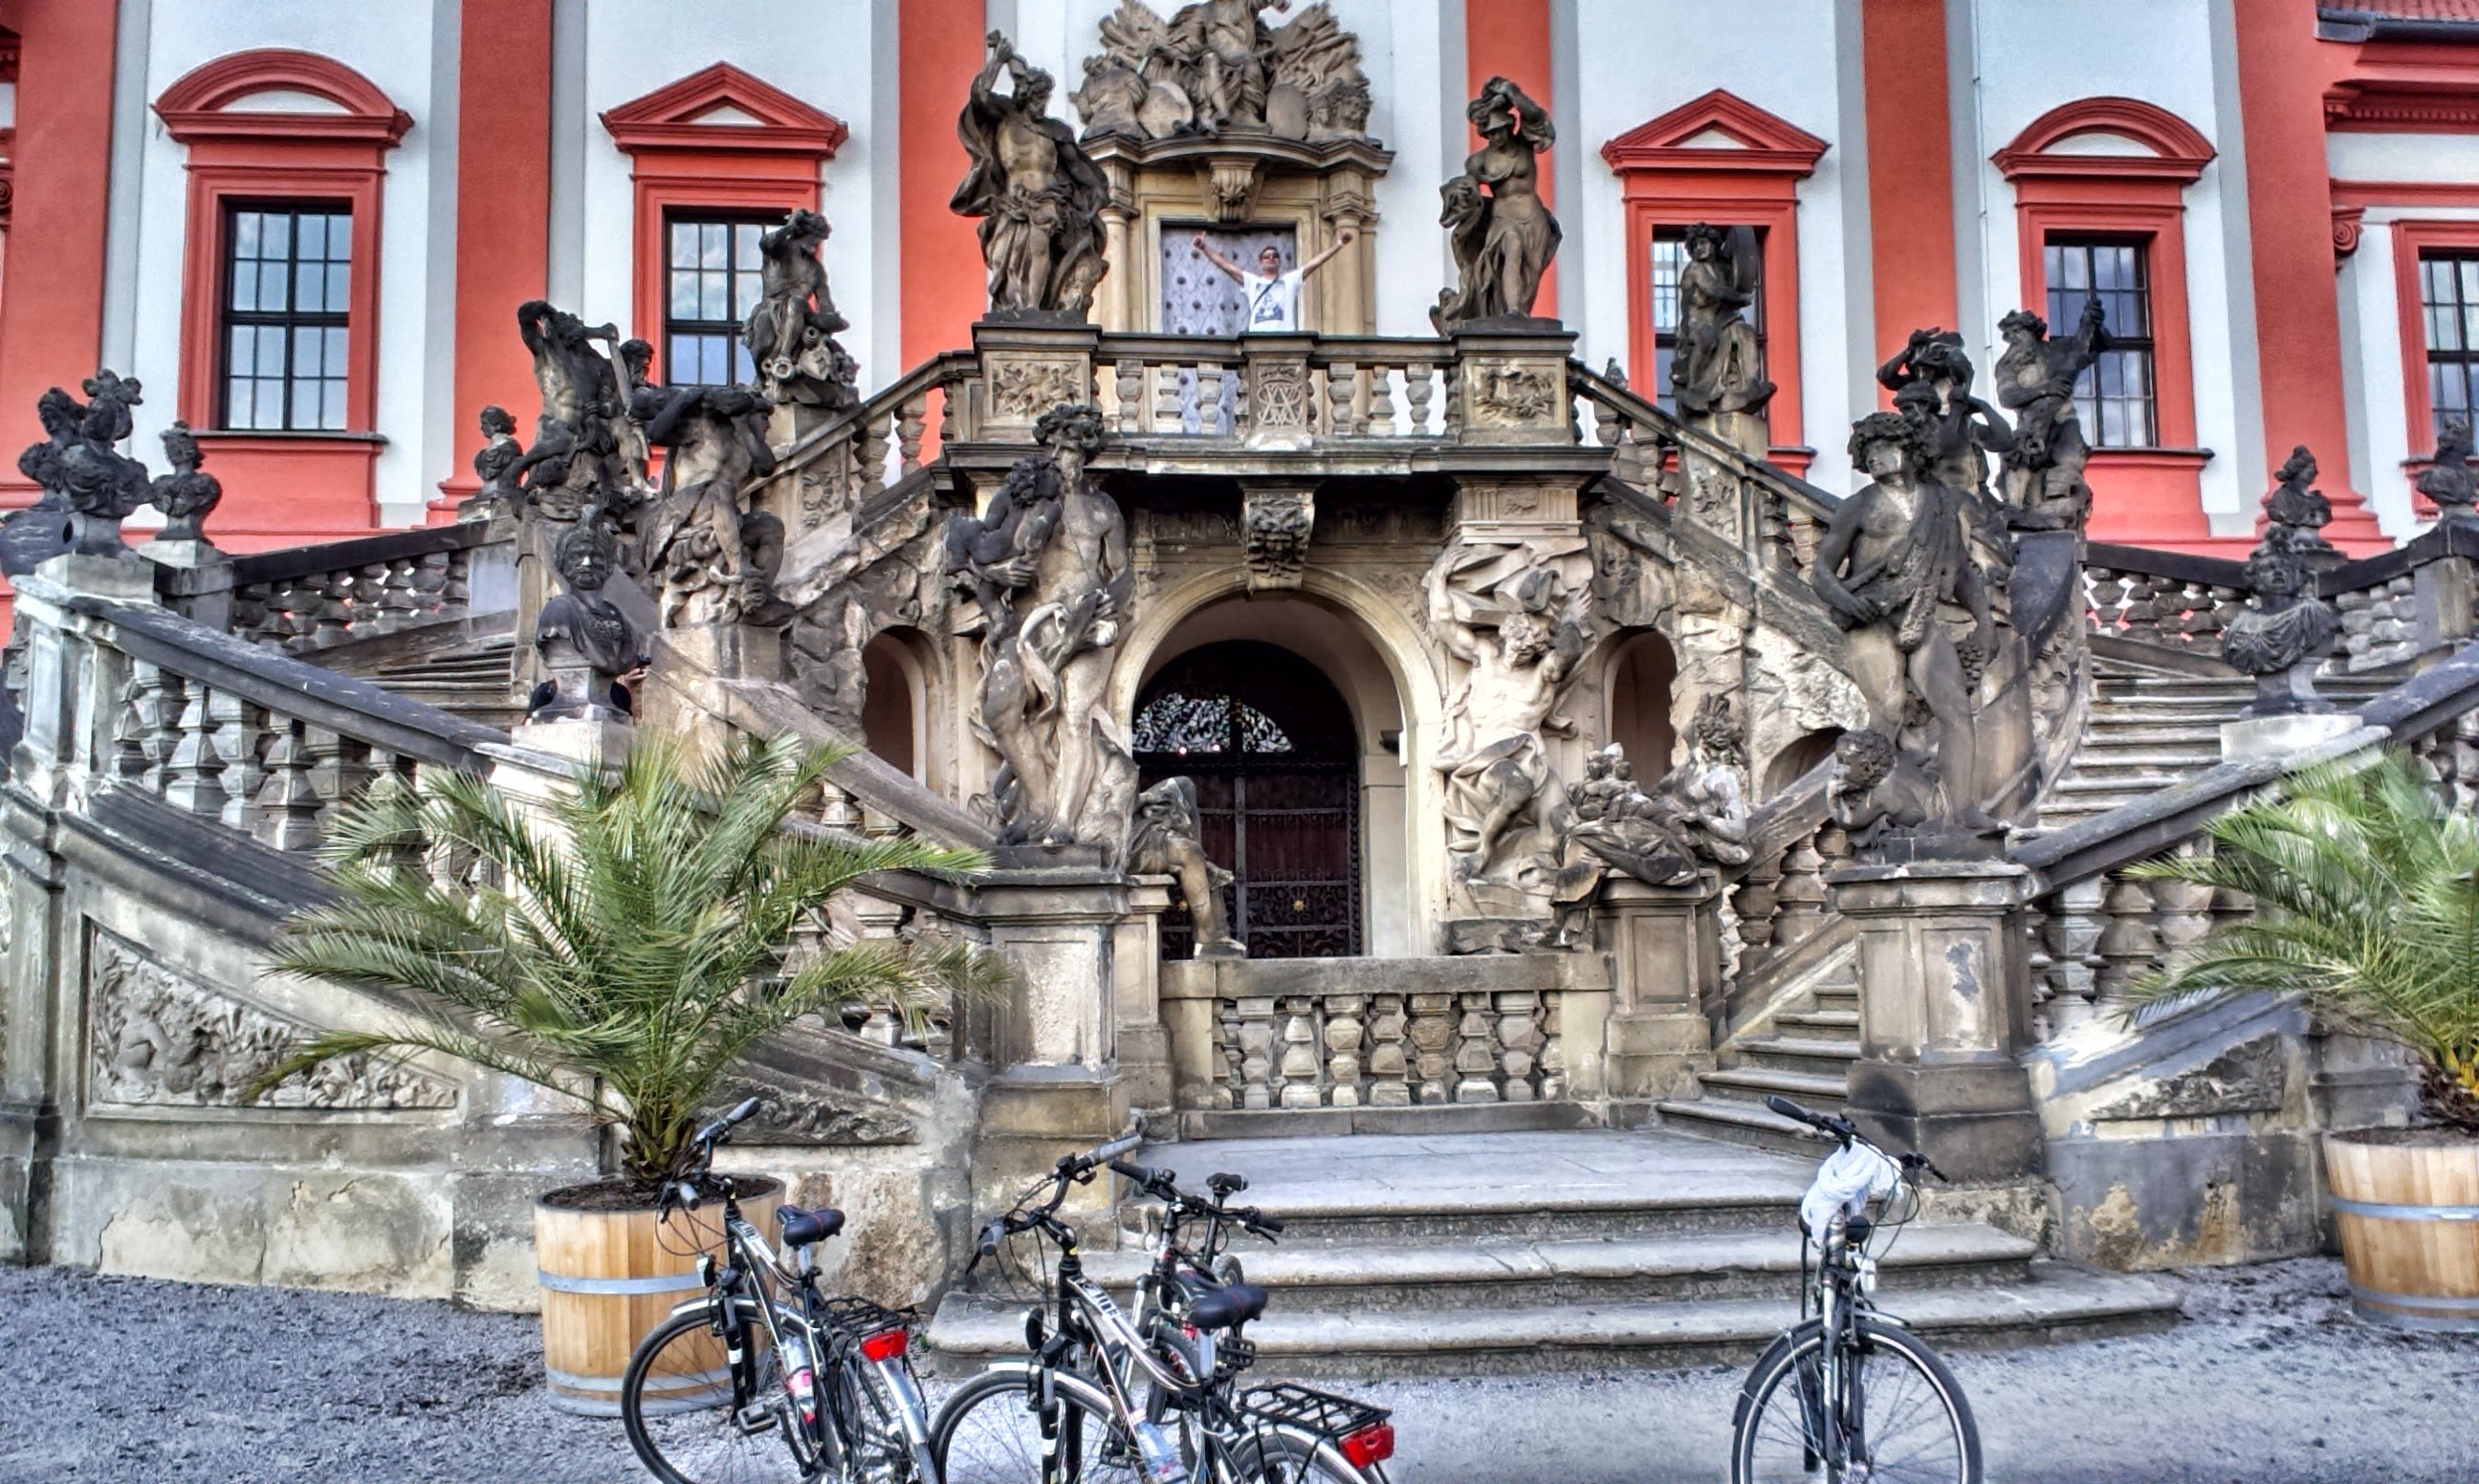 We Bike Prague Tours